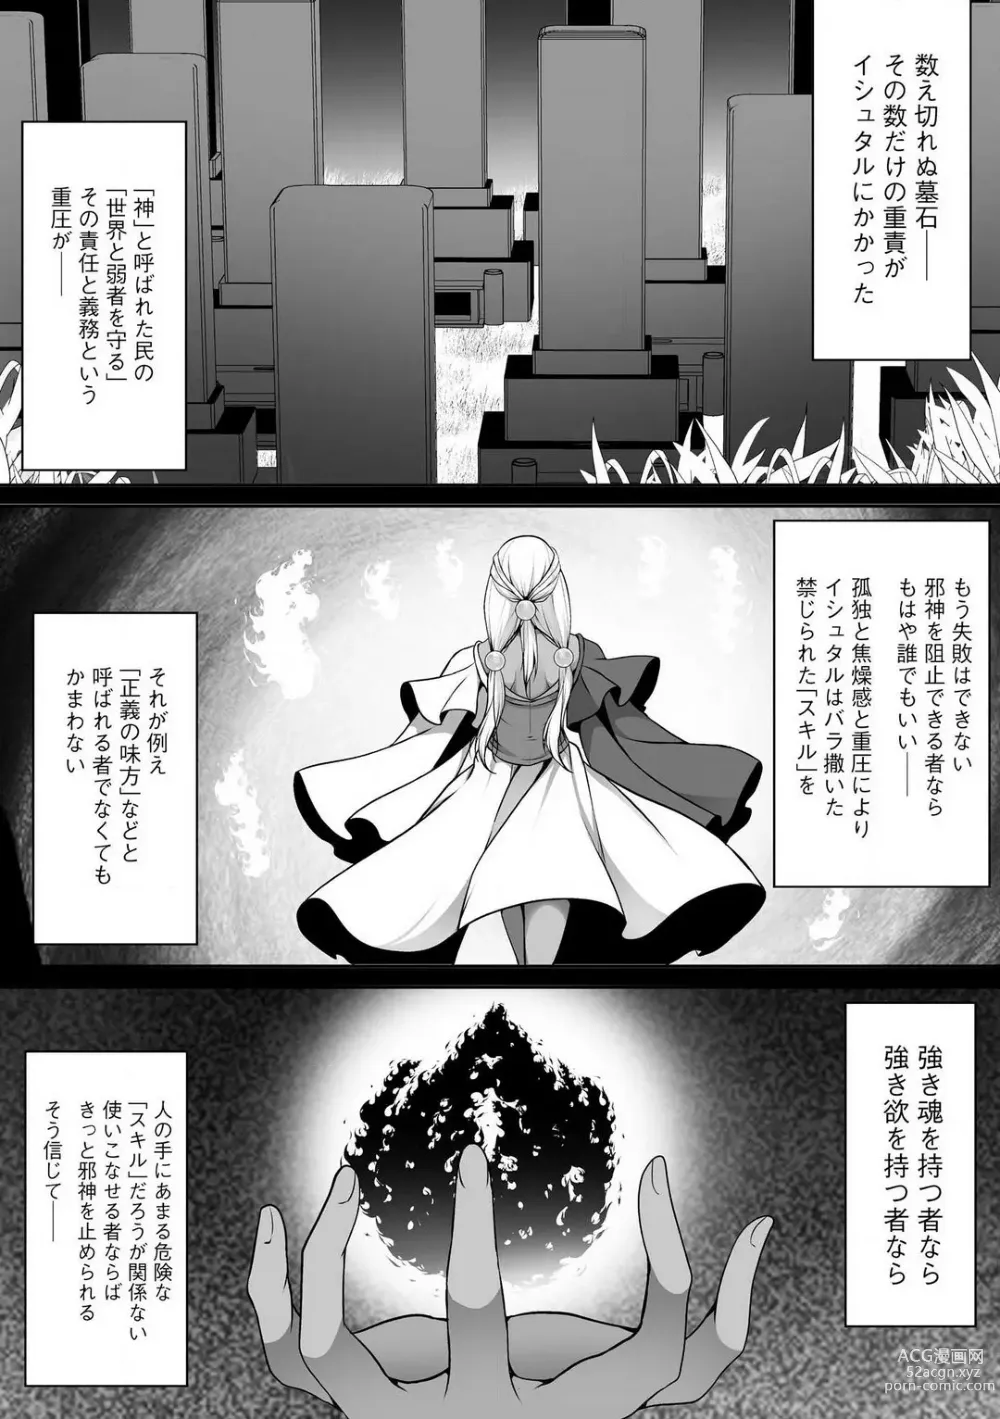 Page 331 of manga Cheat Skill Shihai